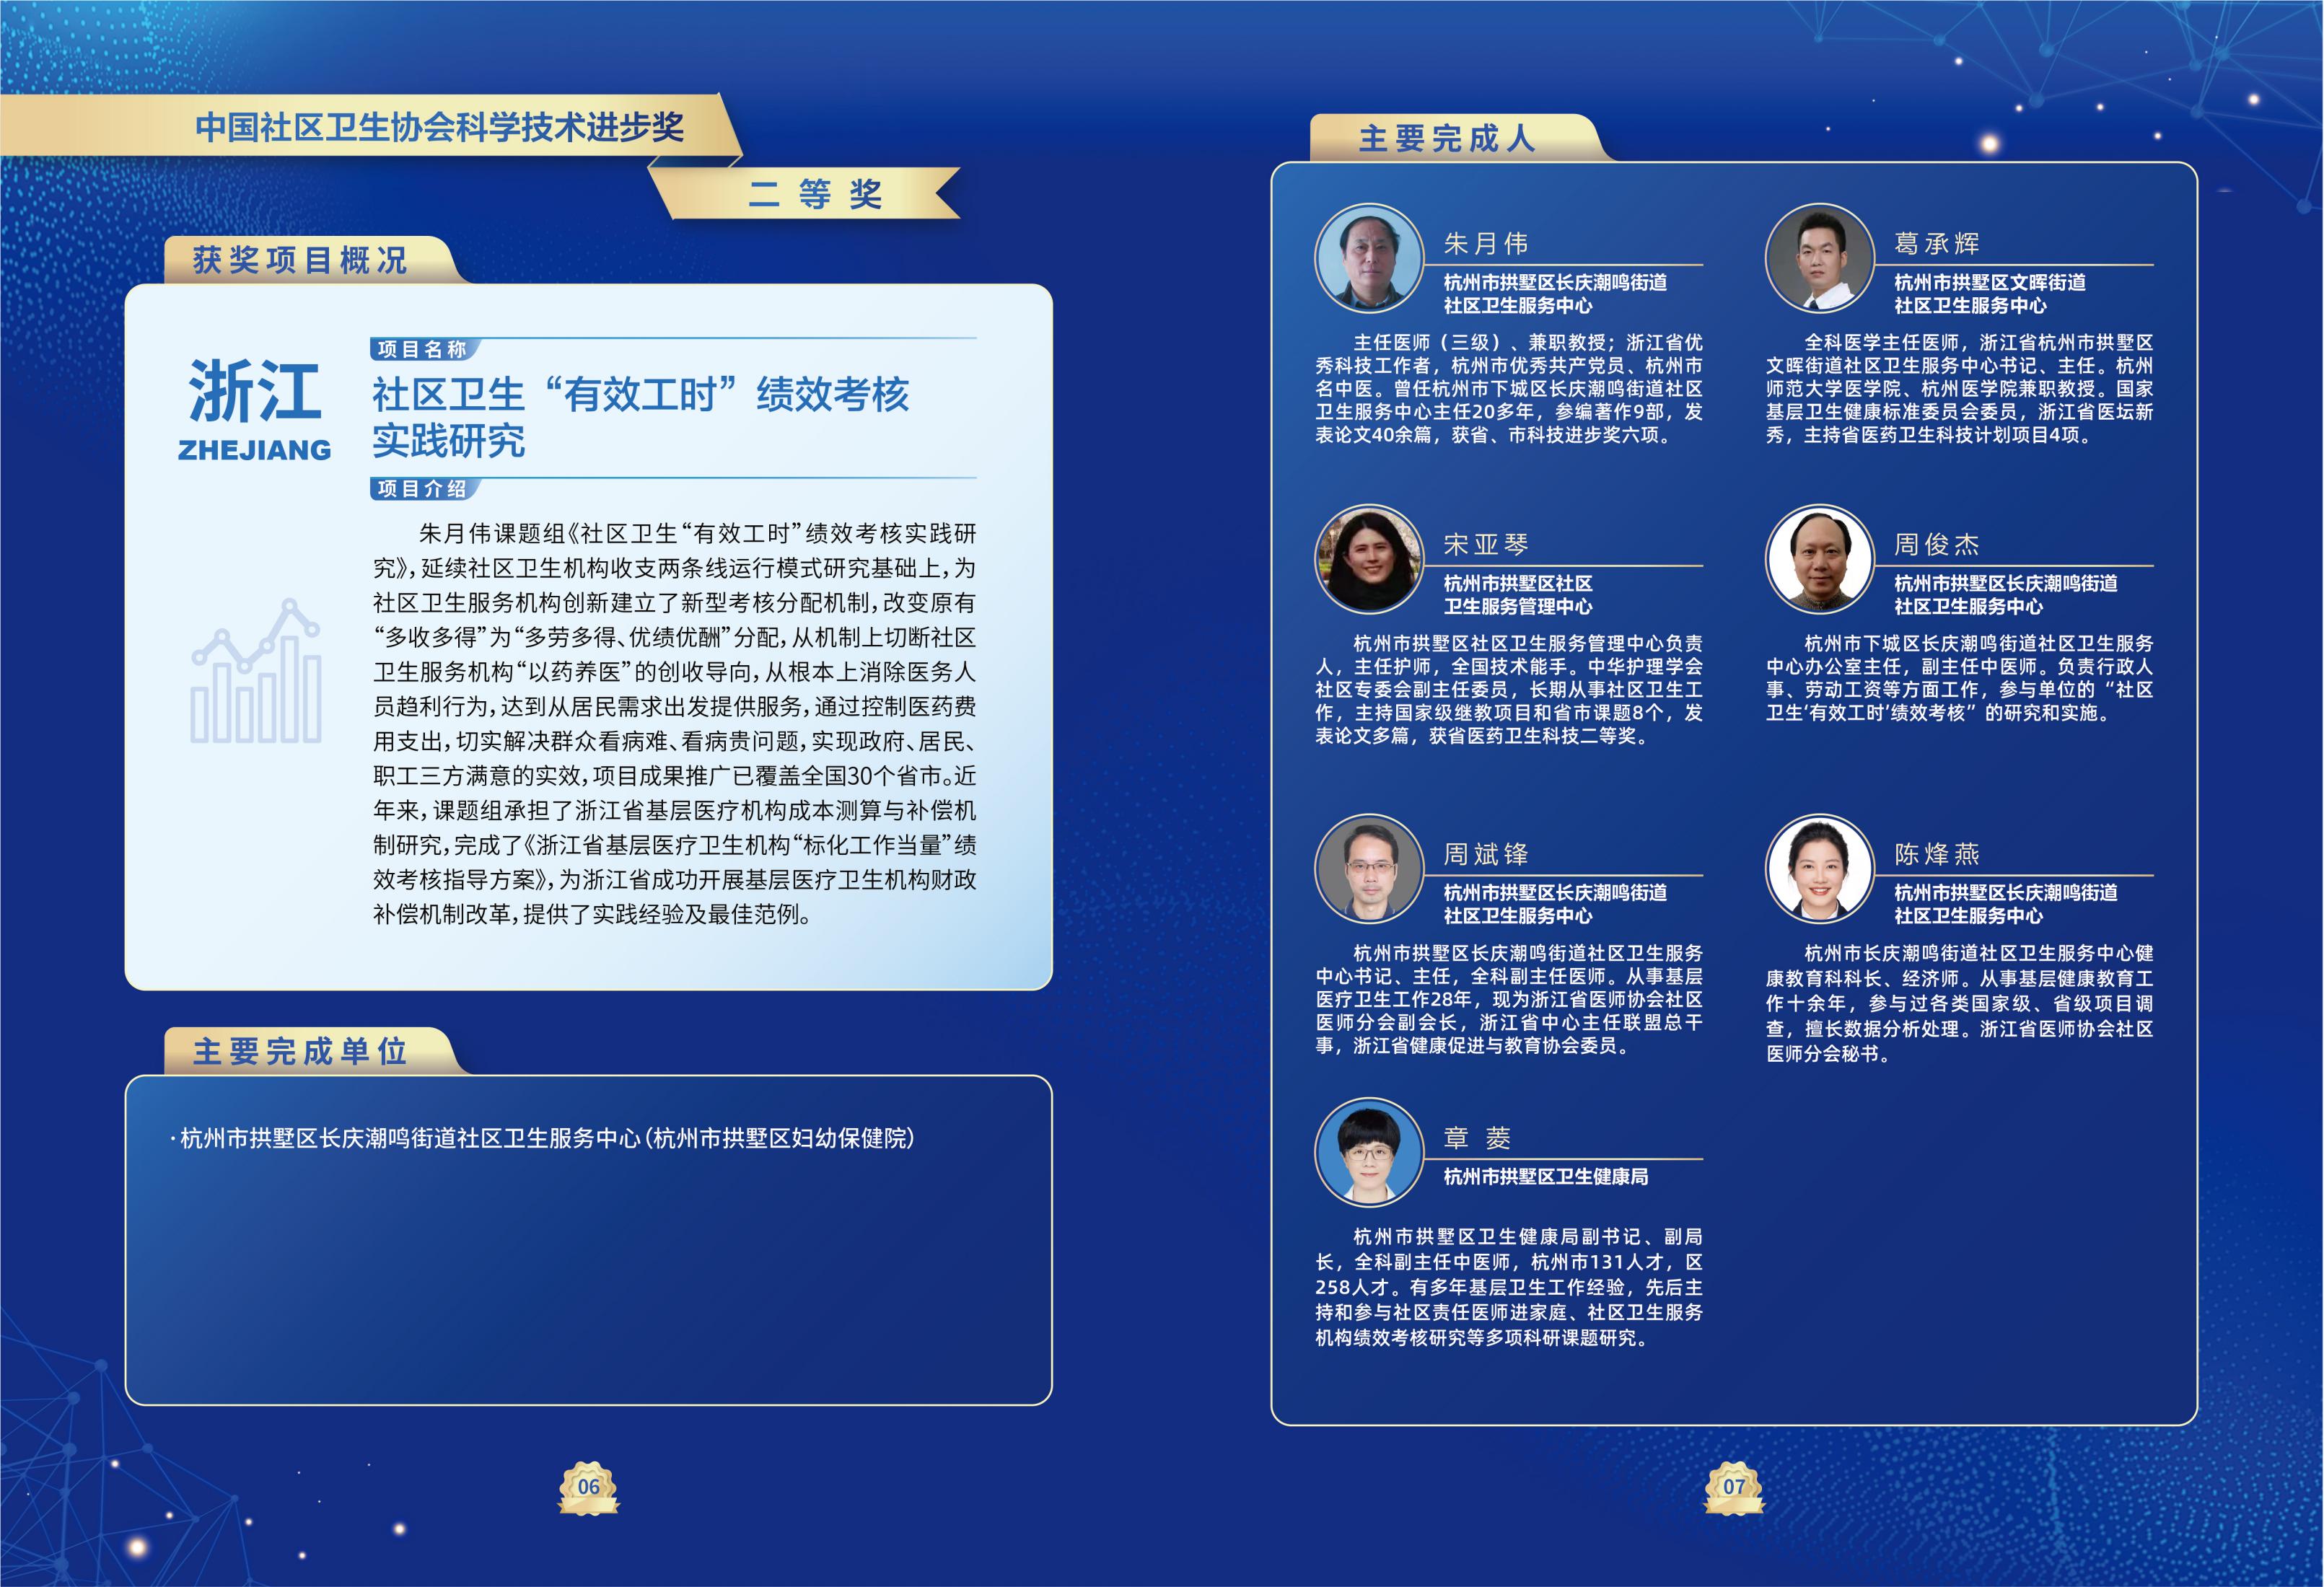 第一届中国社区卫生协会科学技术奖奖励名单_06